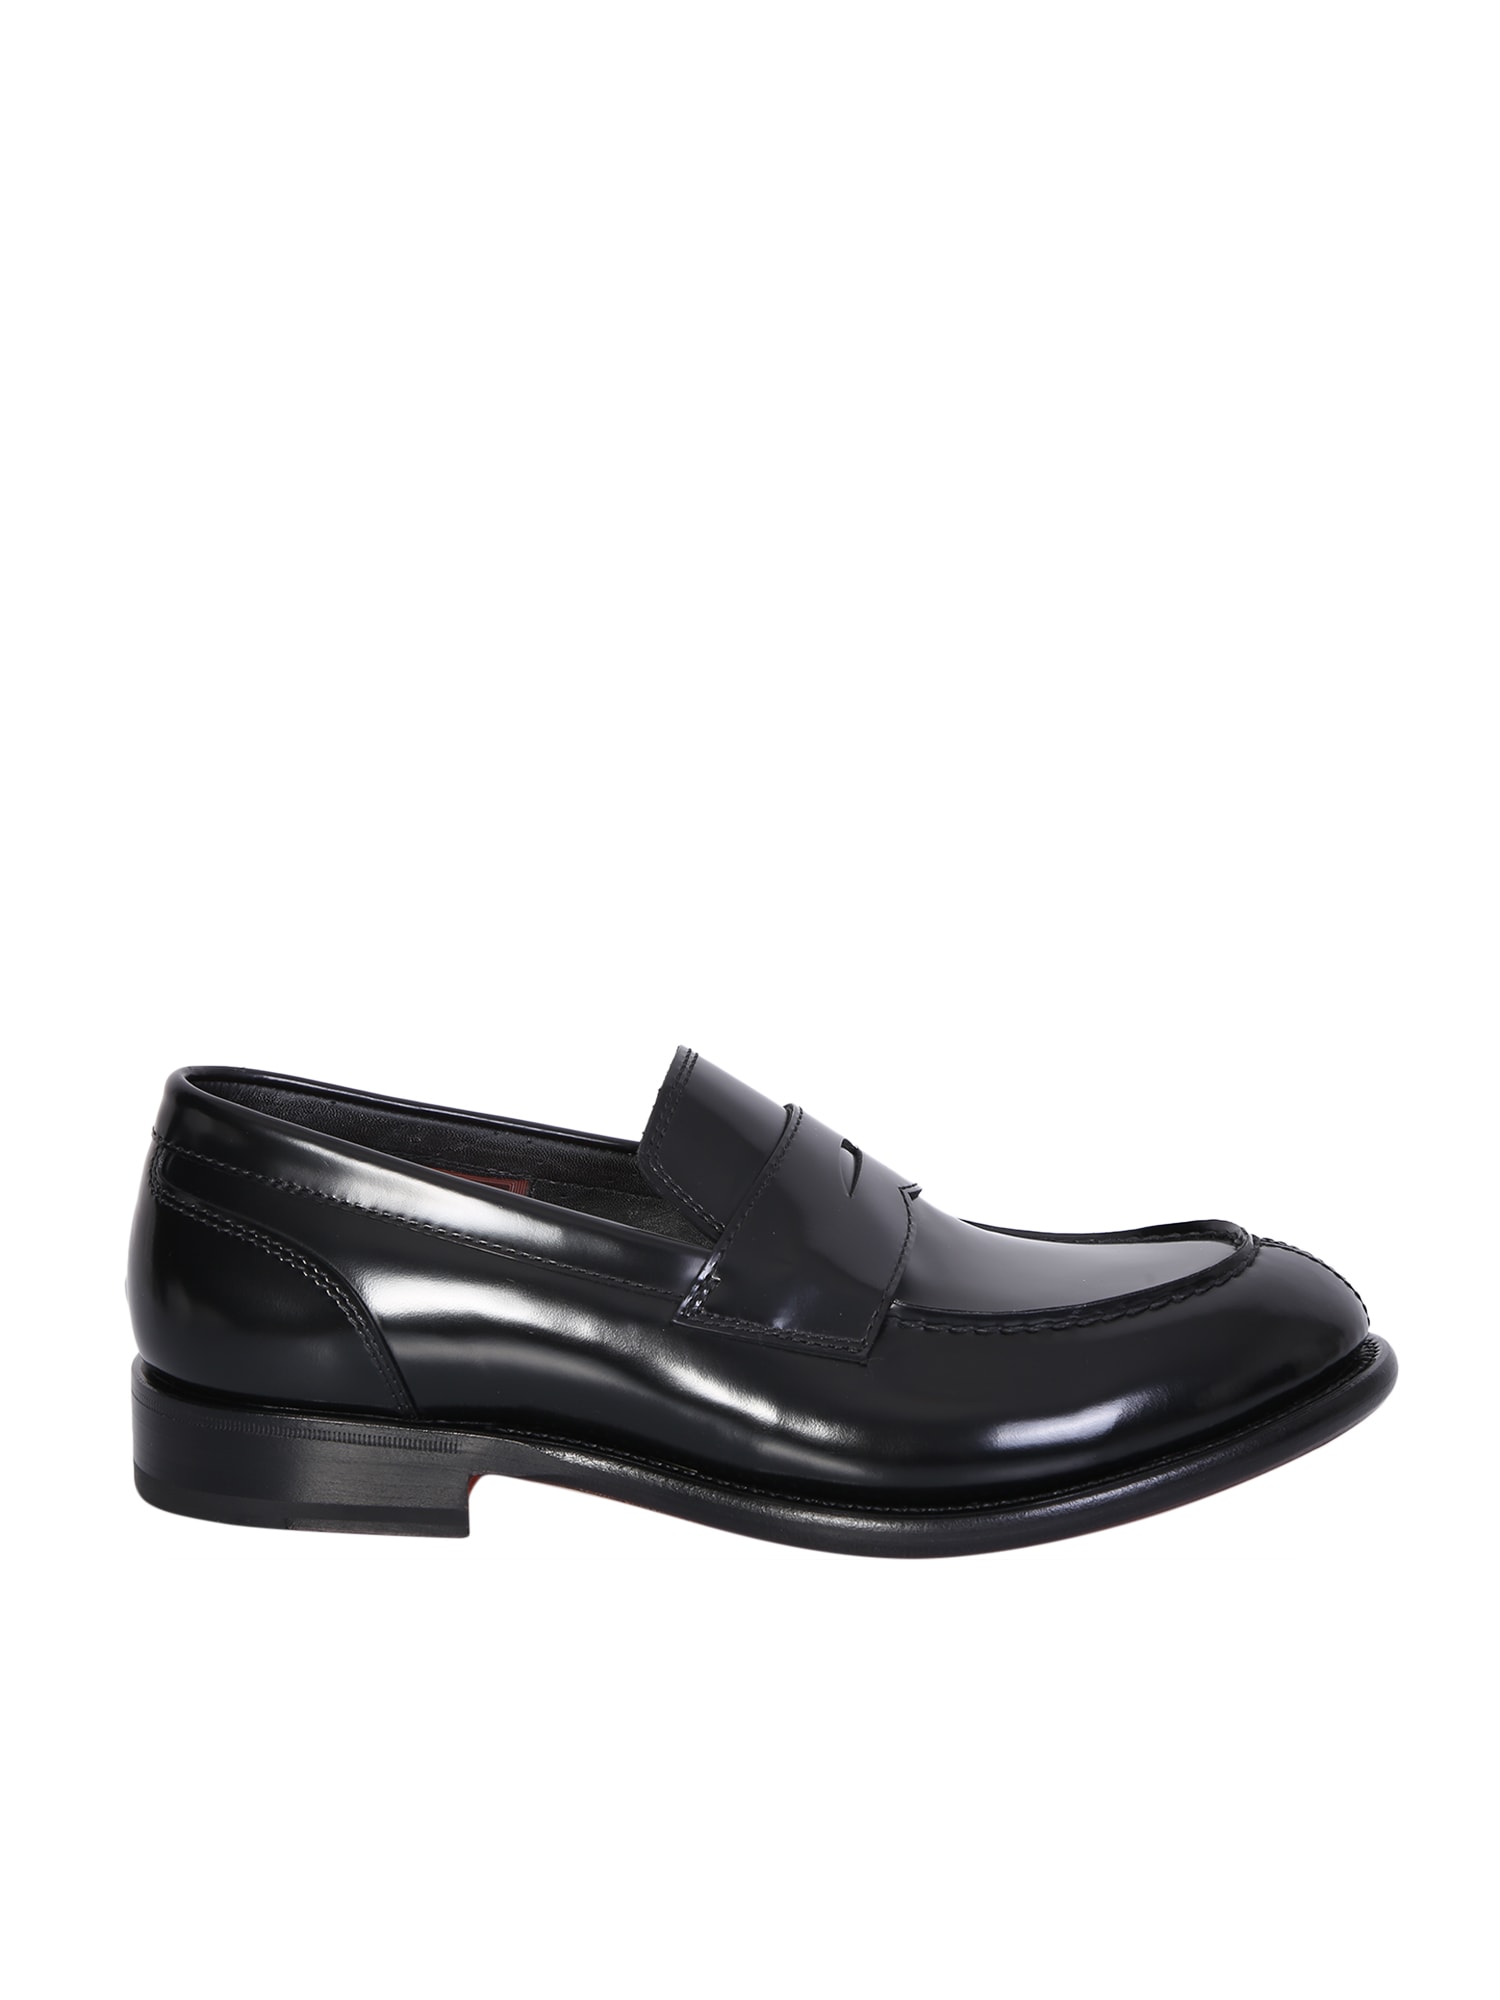 Shop Santoni Black Leather Loafer